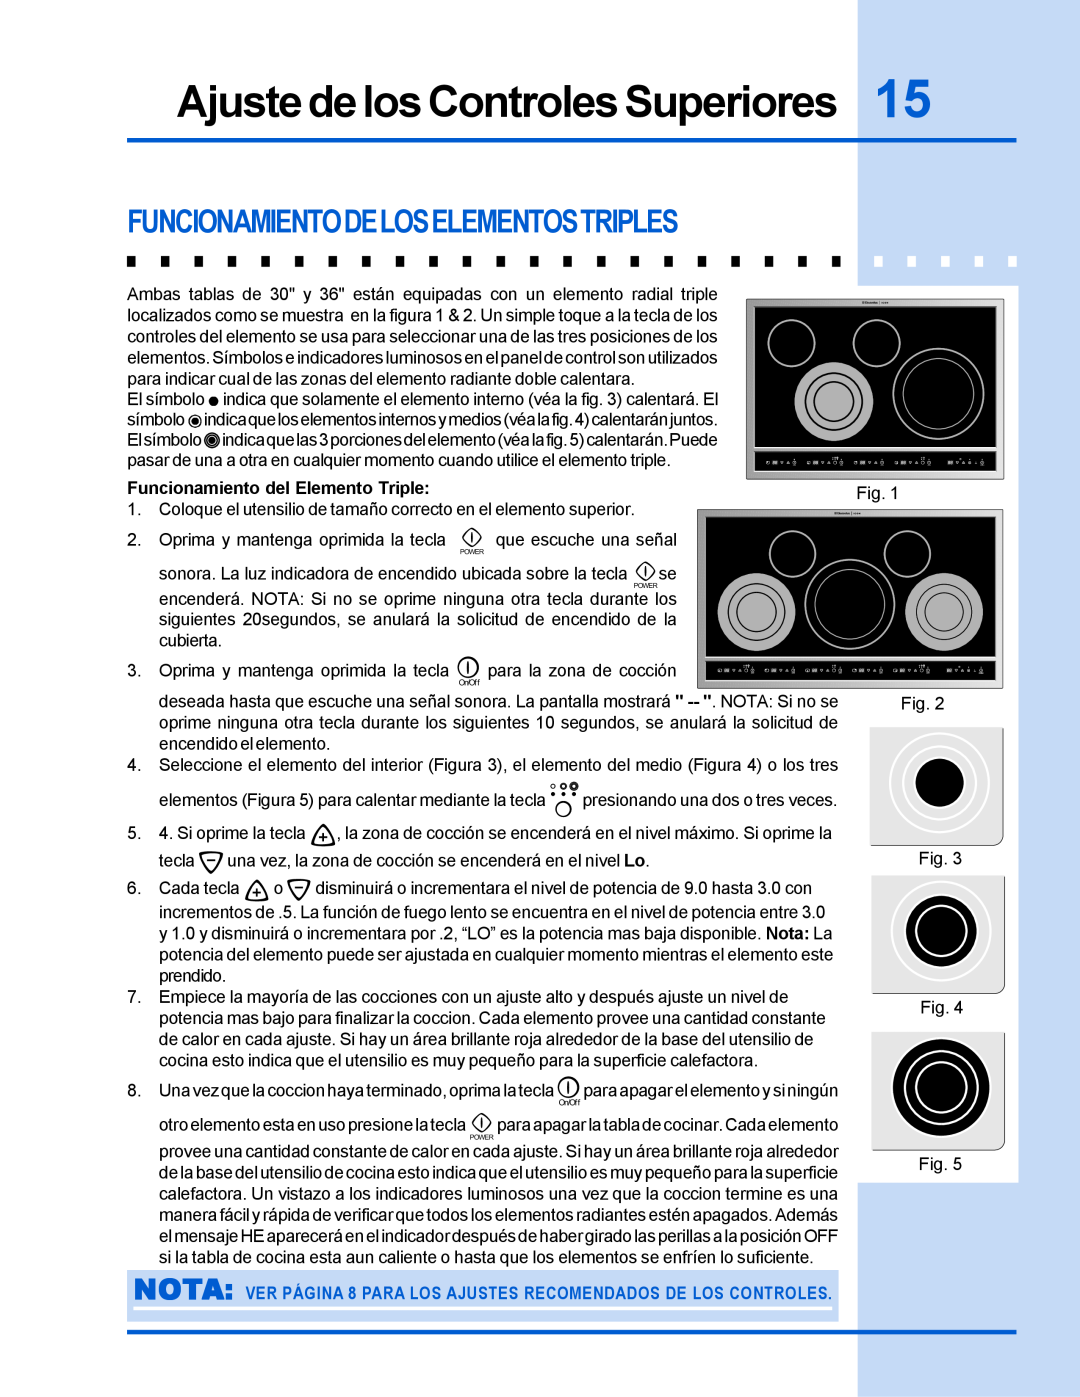 Electrolux 318 200 635 manual Funcionamientodeloselementostriples, Ajuste de los Controles Superiores 